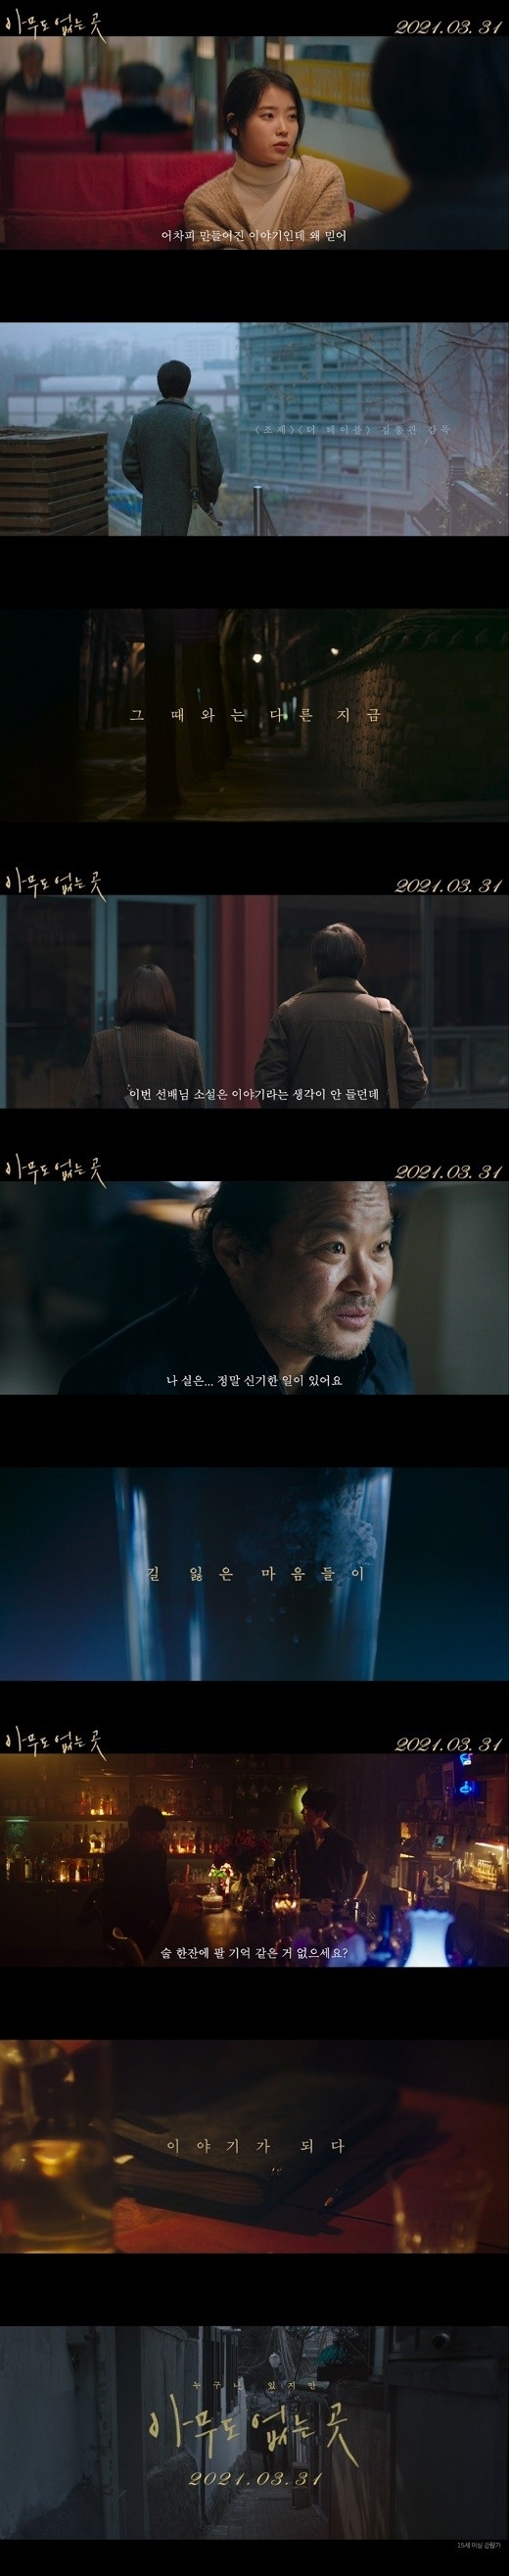 ヨン ウジン Iuら出演 映画 誰もいない所 韓国で3月31日に公開決定 メインポスター 予告映像を公開 Kstyle